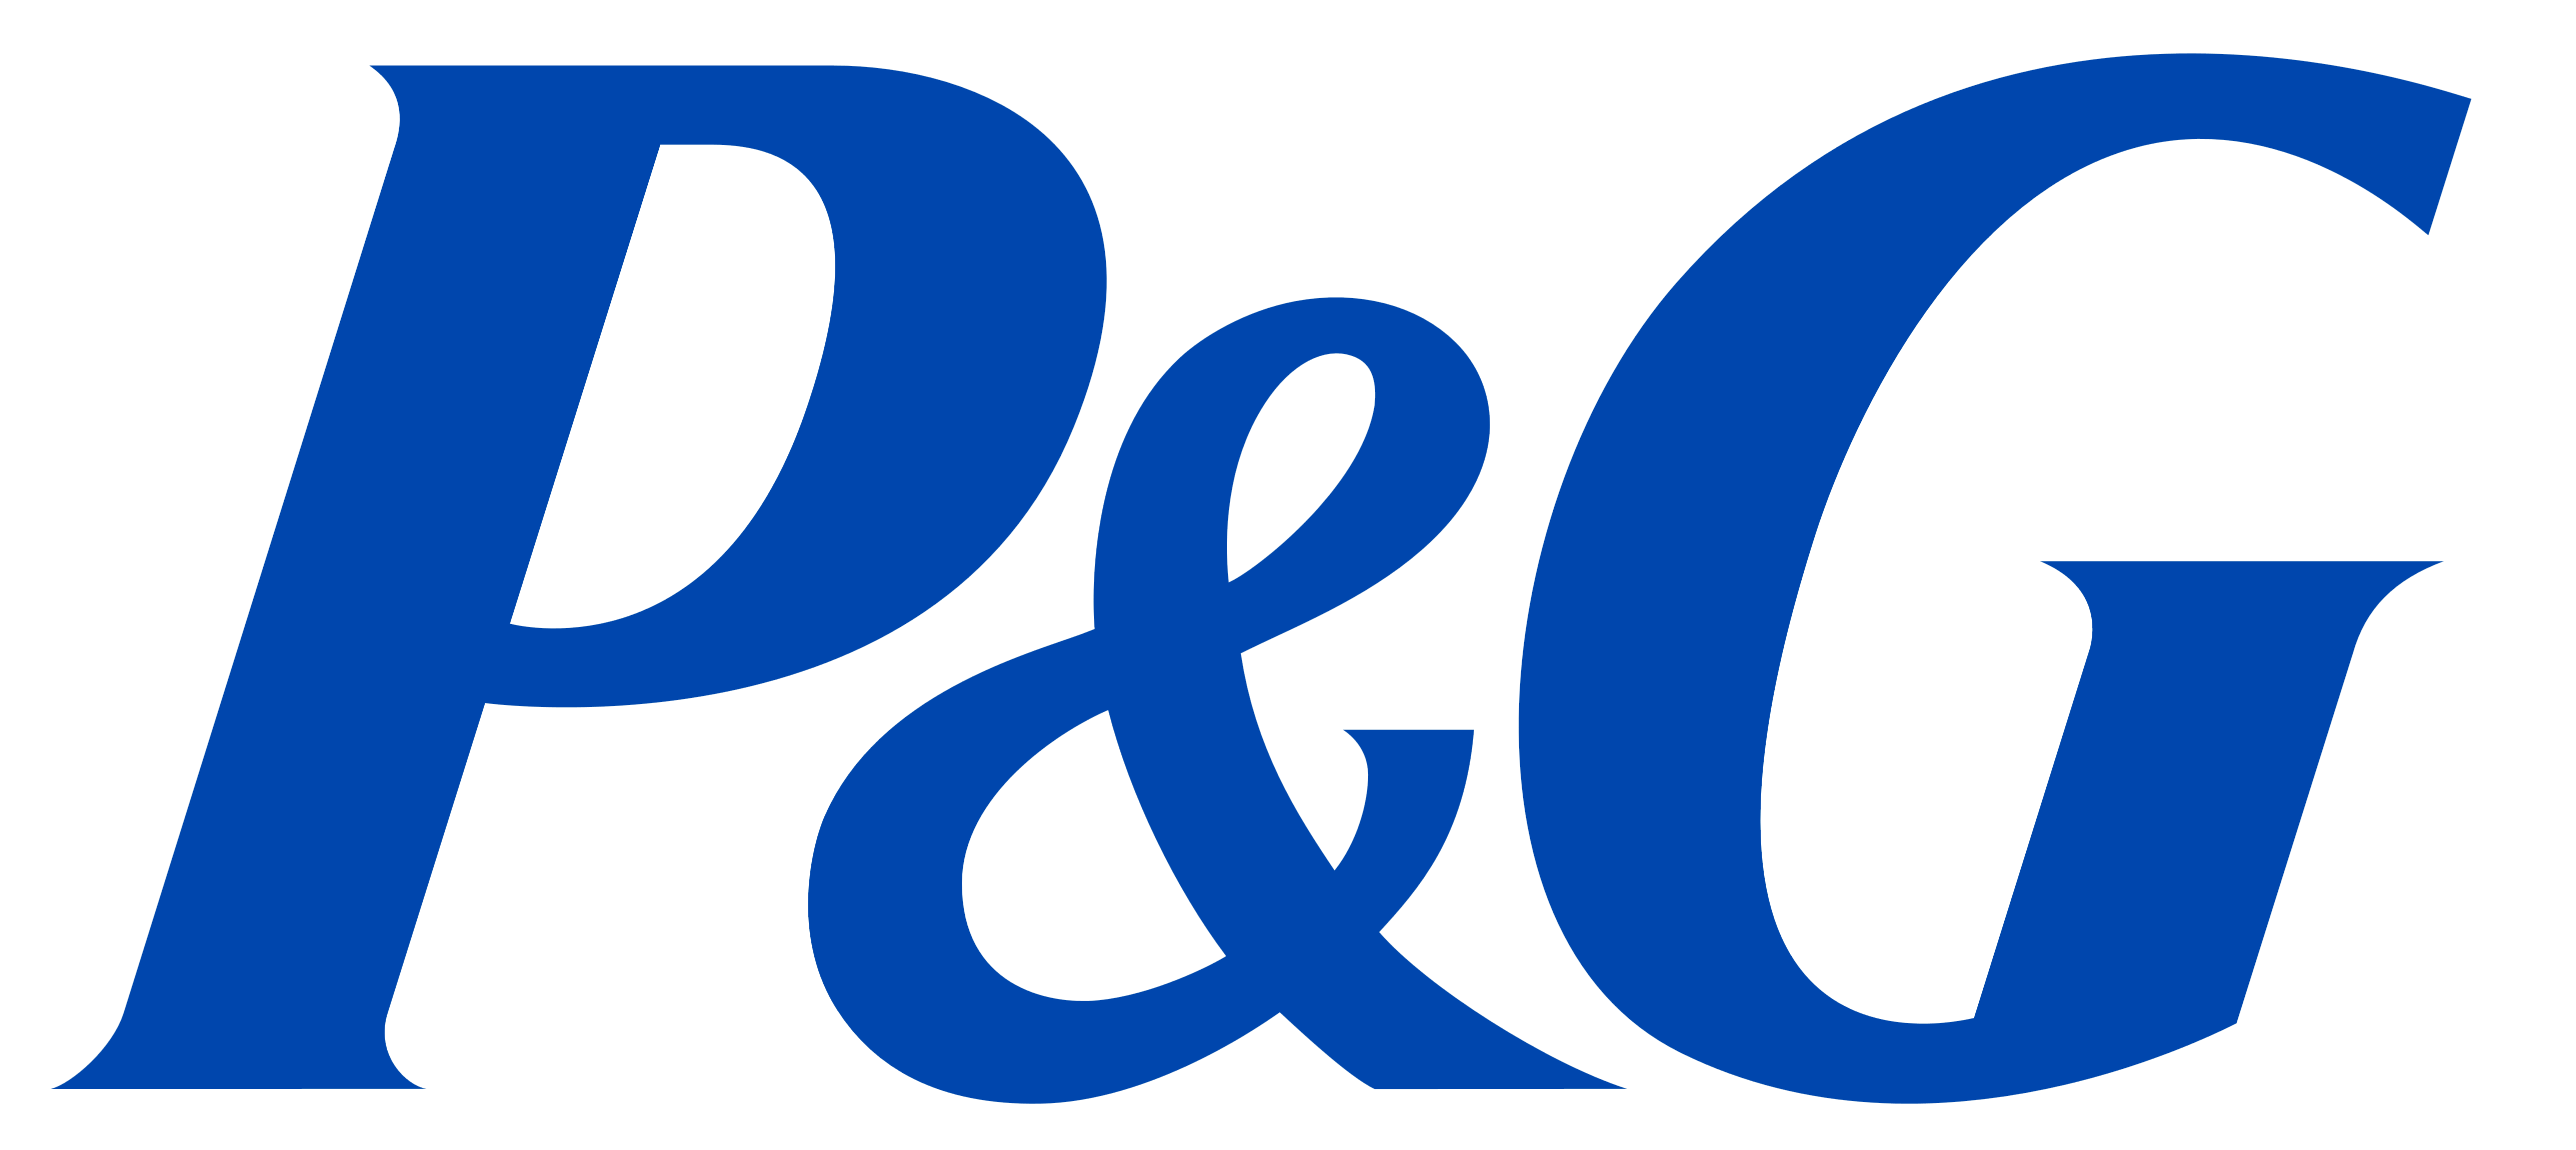 P&G, Procter & Gamble - Logos Download